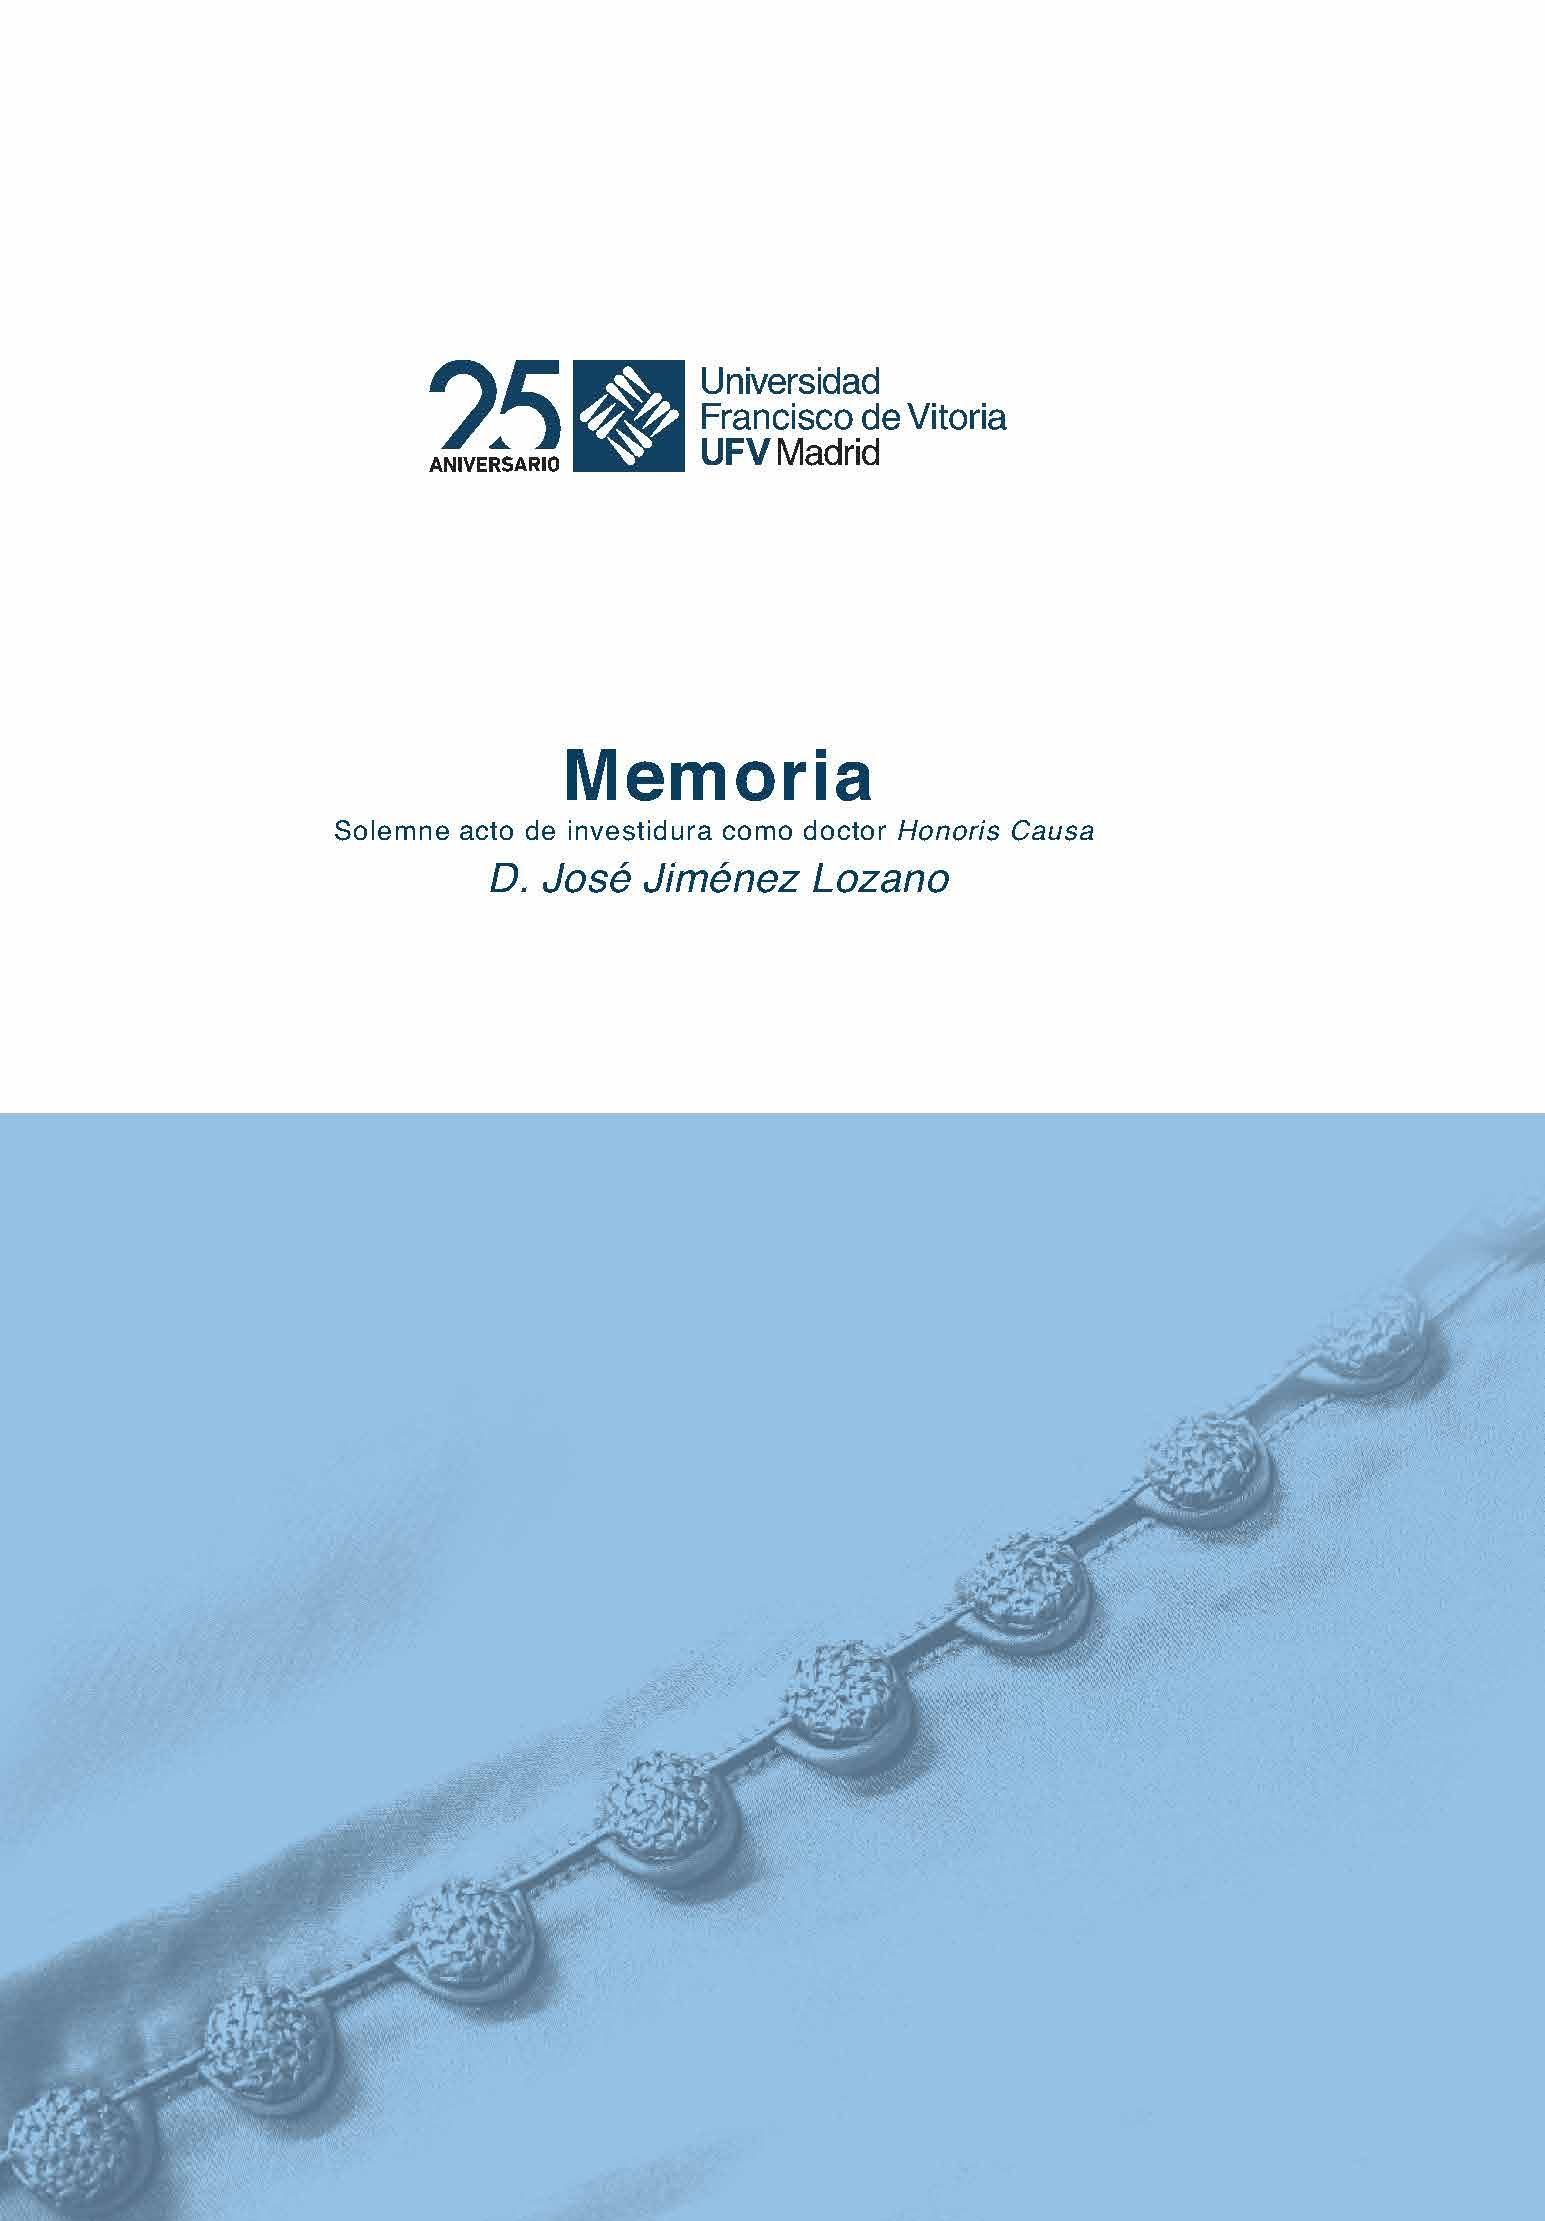 Imagen de portada del libro Memoria del solemne acto académico de investidura como doctor Honoris Causa del excelentísimo señor D. José Jiménez Lozano